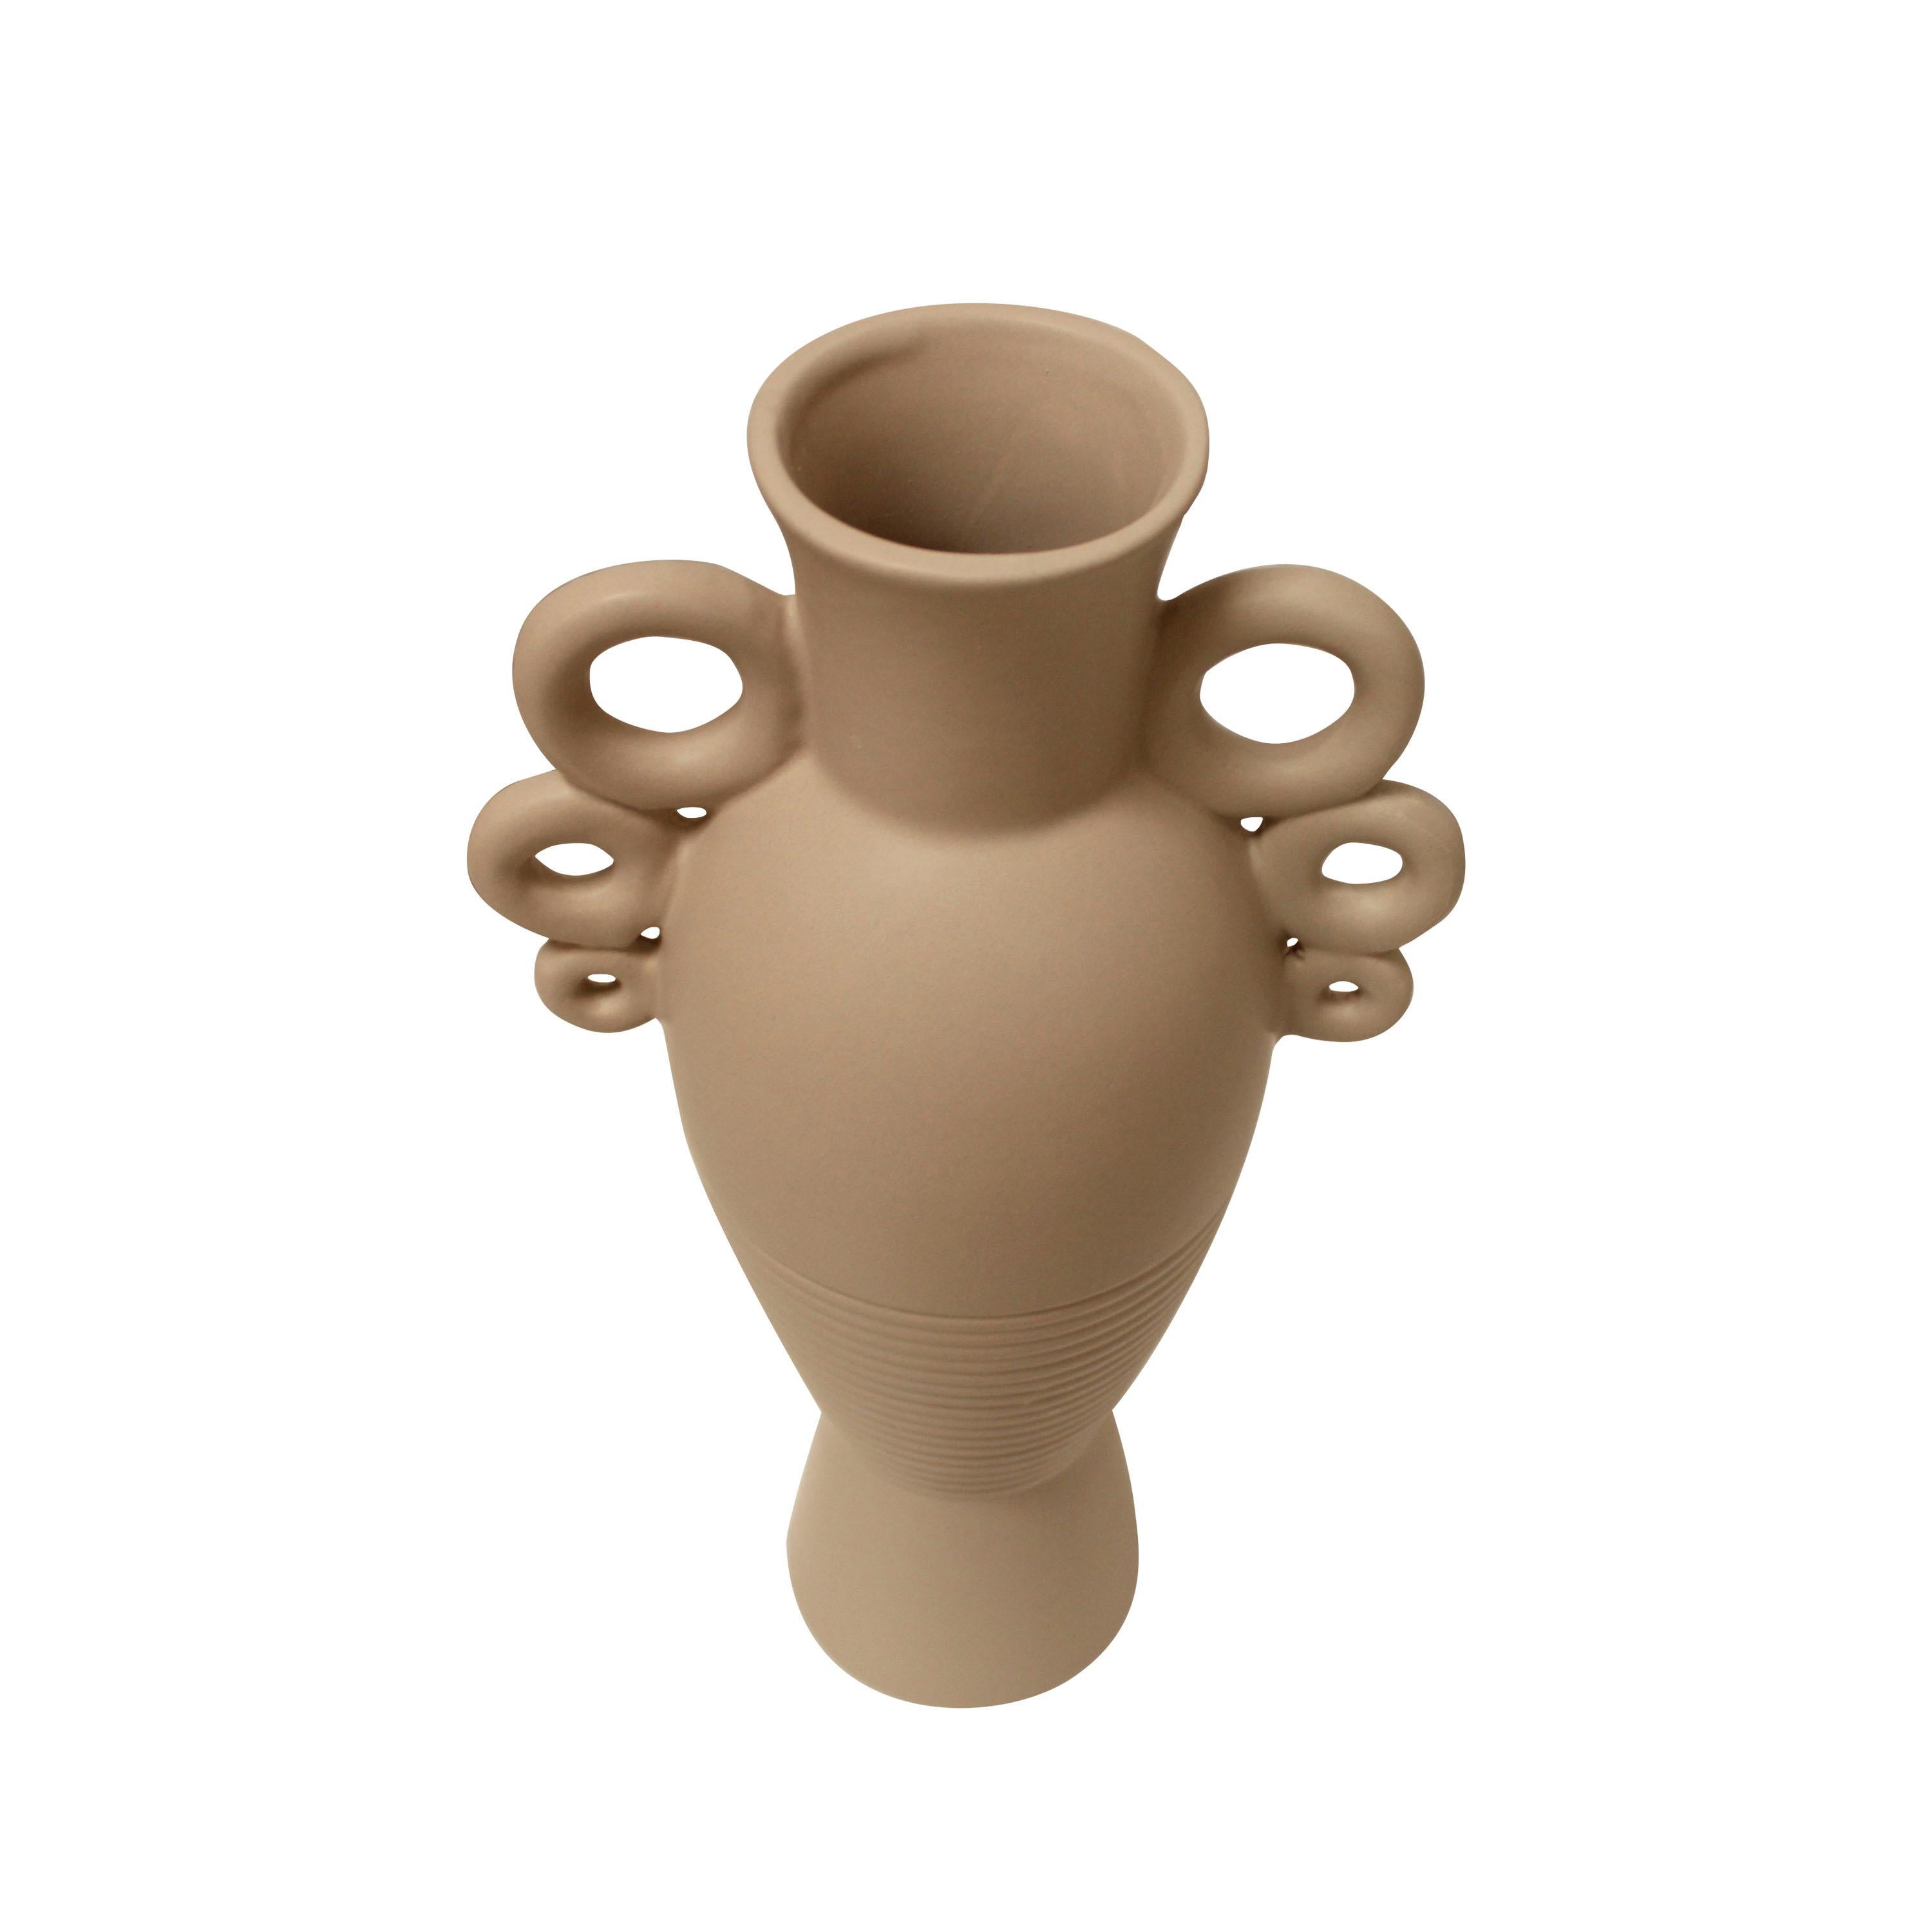 Italienische Keramikvase mit balusterförmigem Körper und zylindrischem Hals, beige-grau bemalt. Die Vase hatte zwei Henkel aus 3  verbundene Keramikringe und eine eingravierte Linienverzierung. 